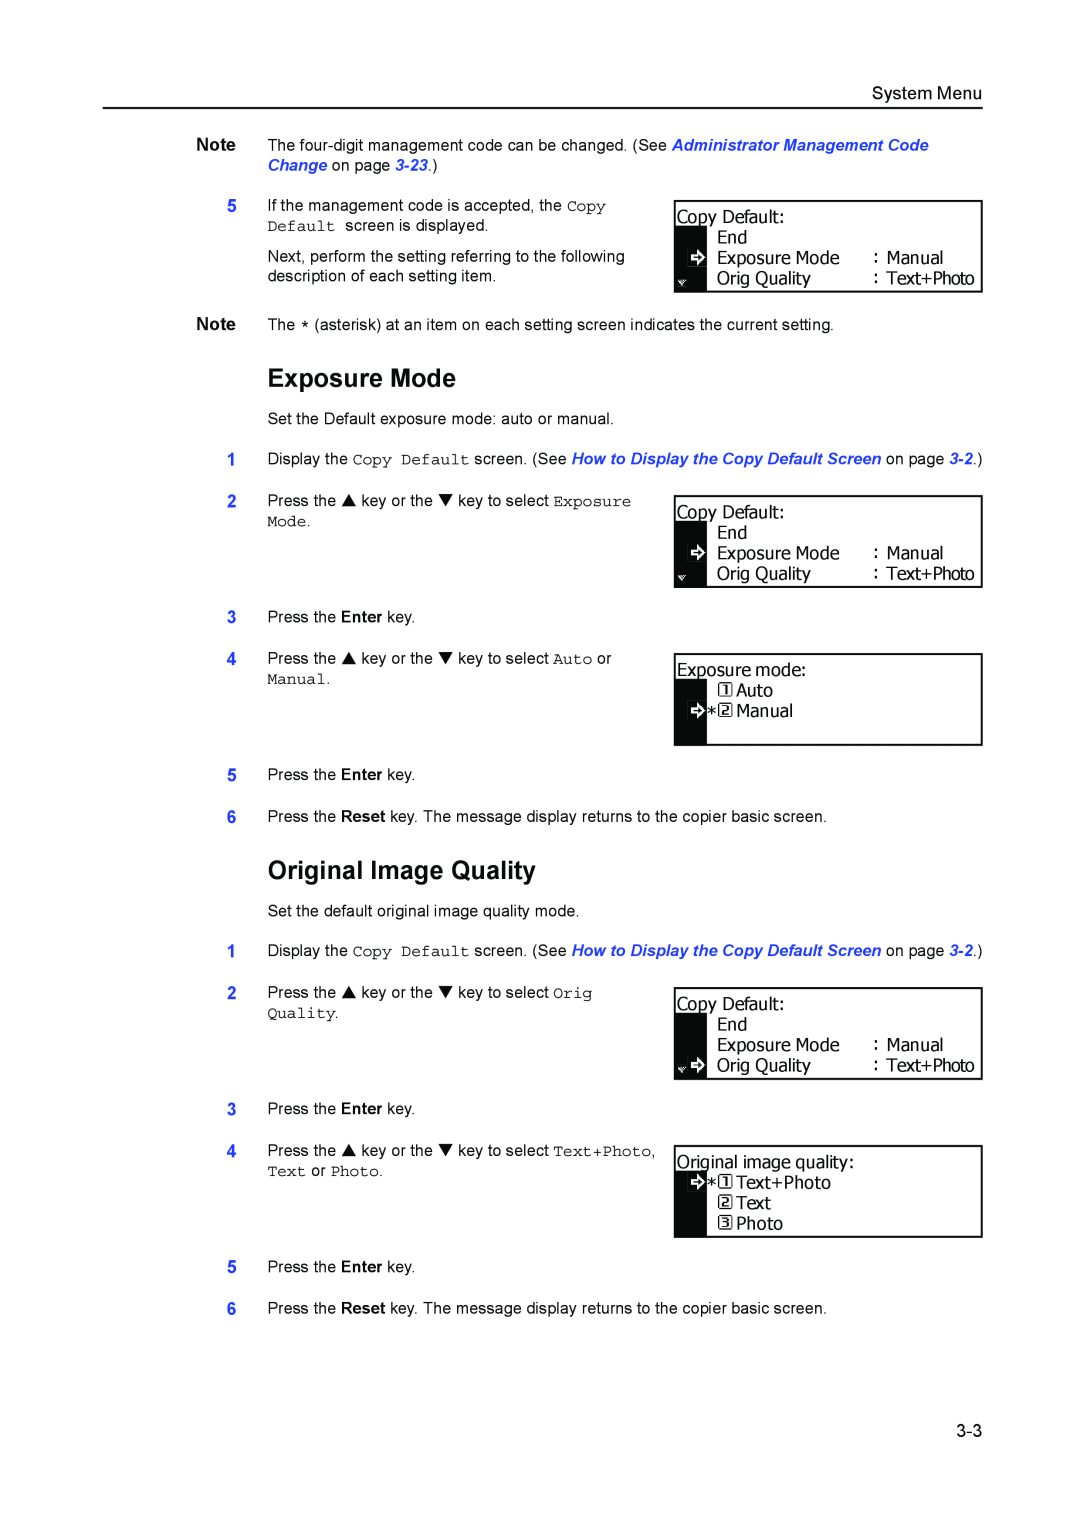 Kyocera 2050, 1650, 2550 manual Exposure Mode, Original Image Quality, System Menu 